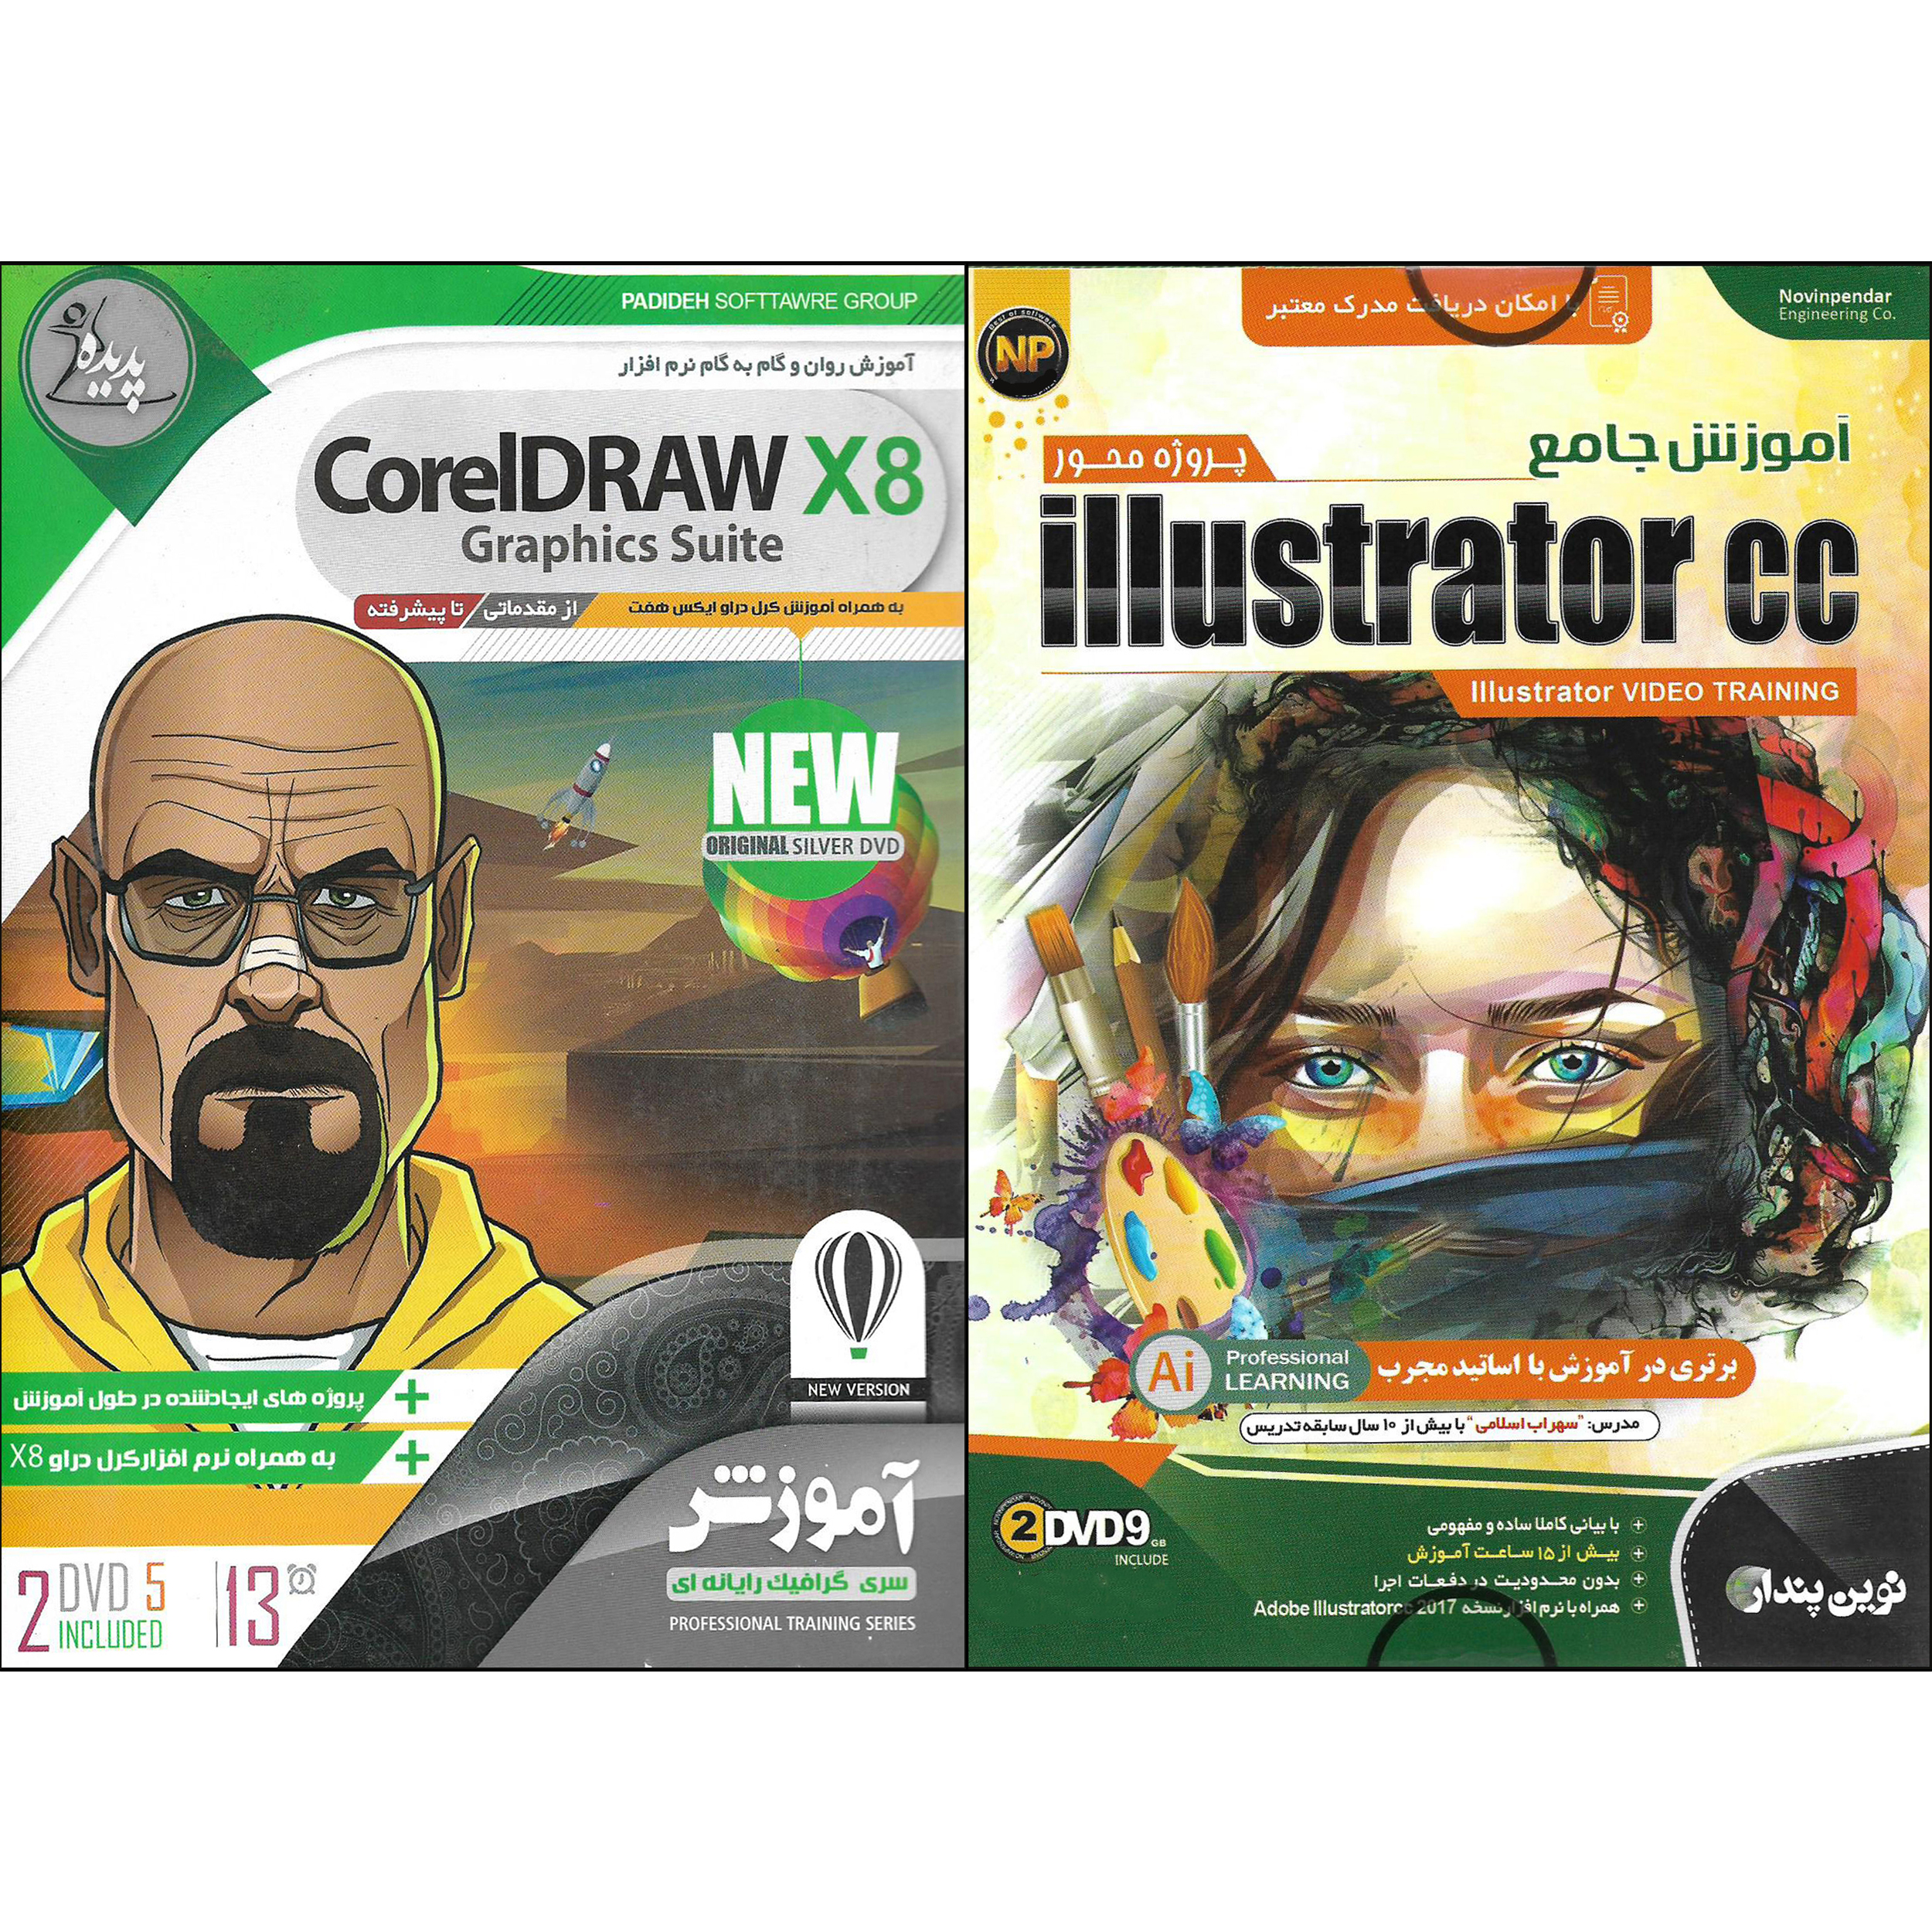 نرم افزار آموزش پروژه محور Illustrator cc نشر نوین پندار به همراه نرم افزار آموزش CORELDRAW X8 نشر پدیده